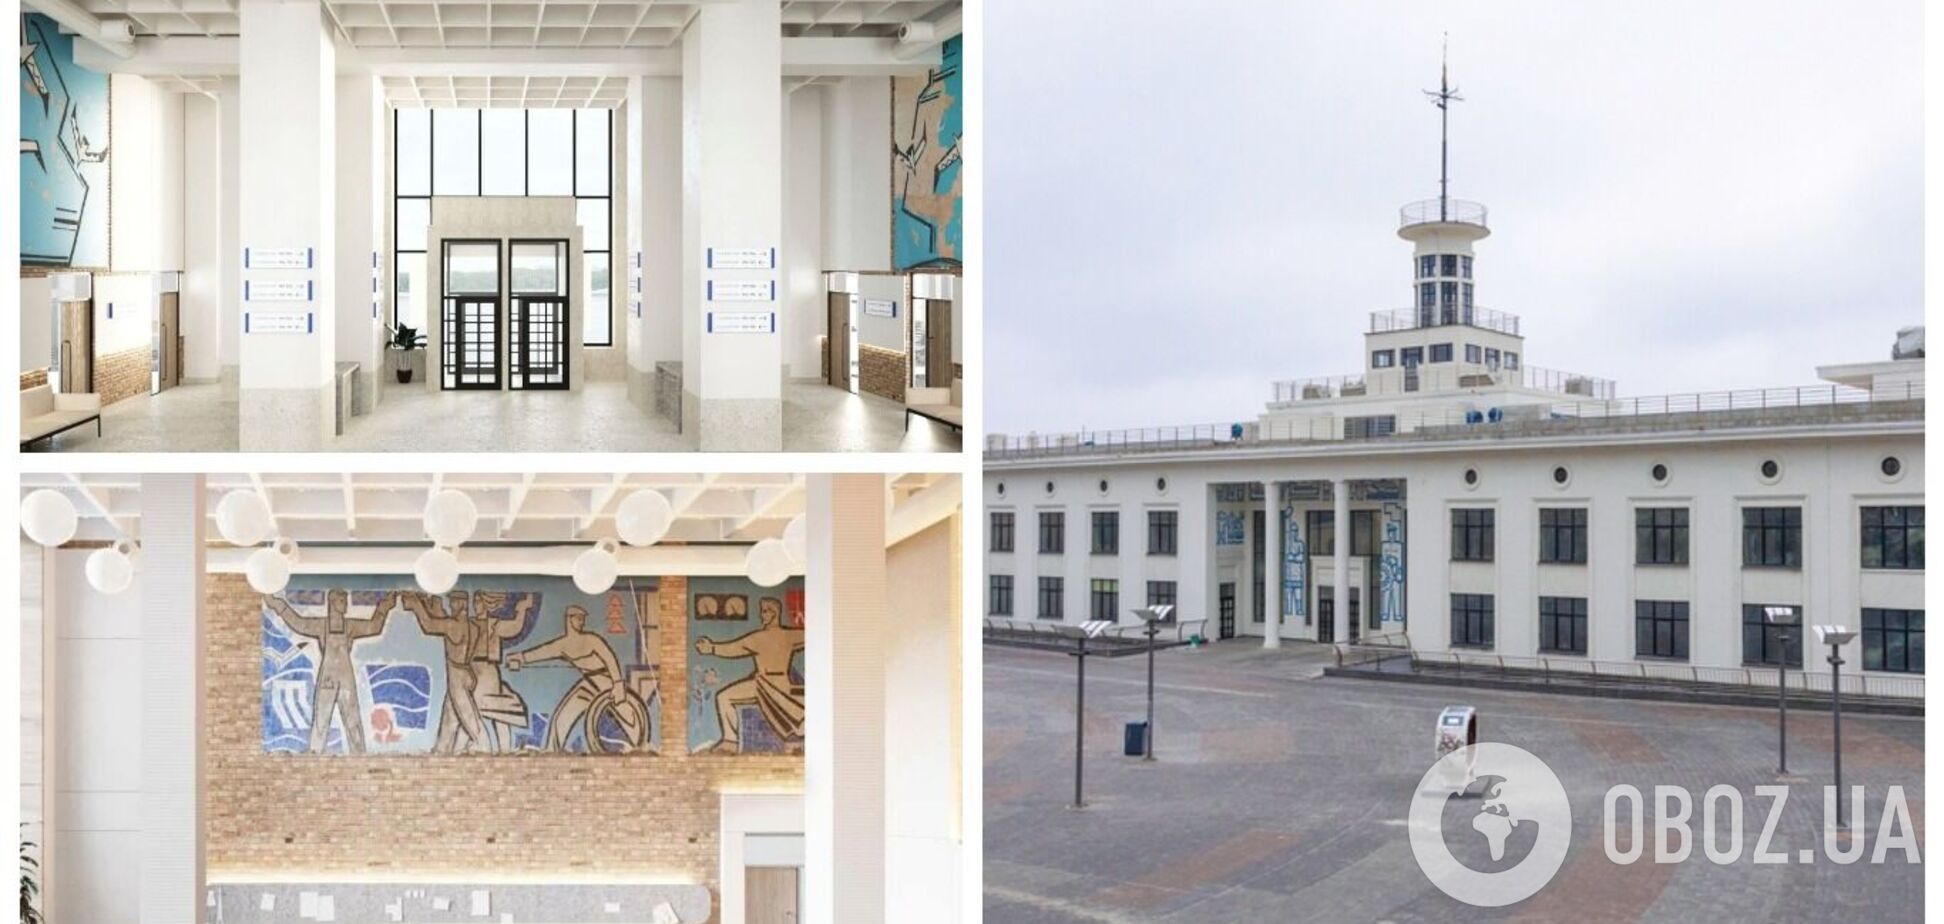 У Києві за підтримки 'Укргазбанку' відновили історичну будівлю Річкового вокзалу. Фото